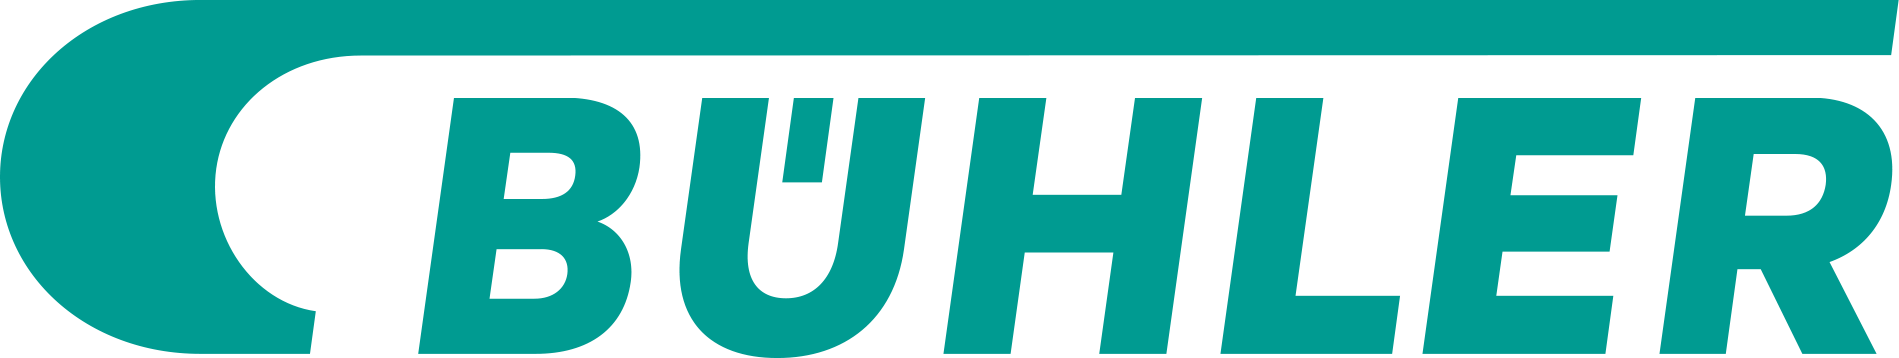 Logo Bühler AG